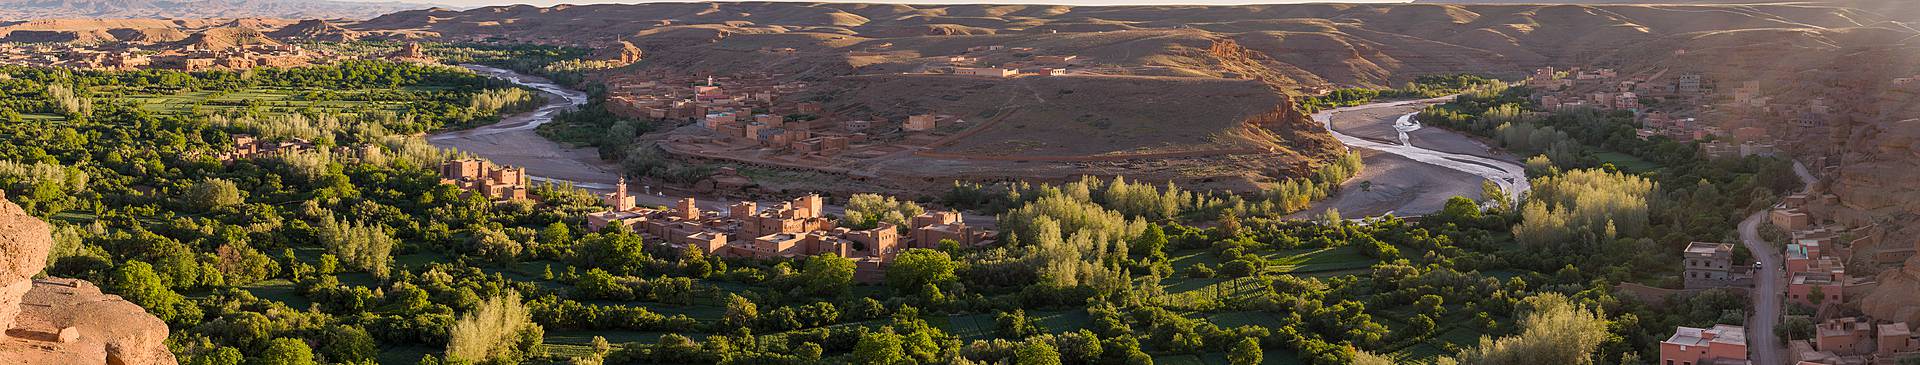 Morocco in April